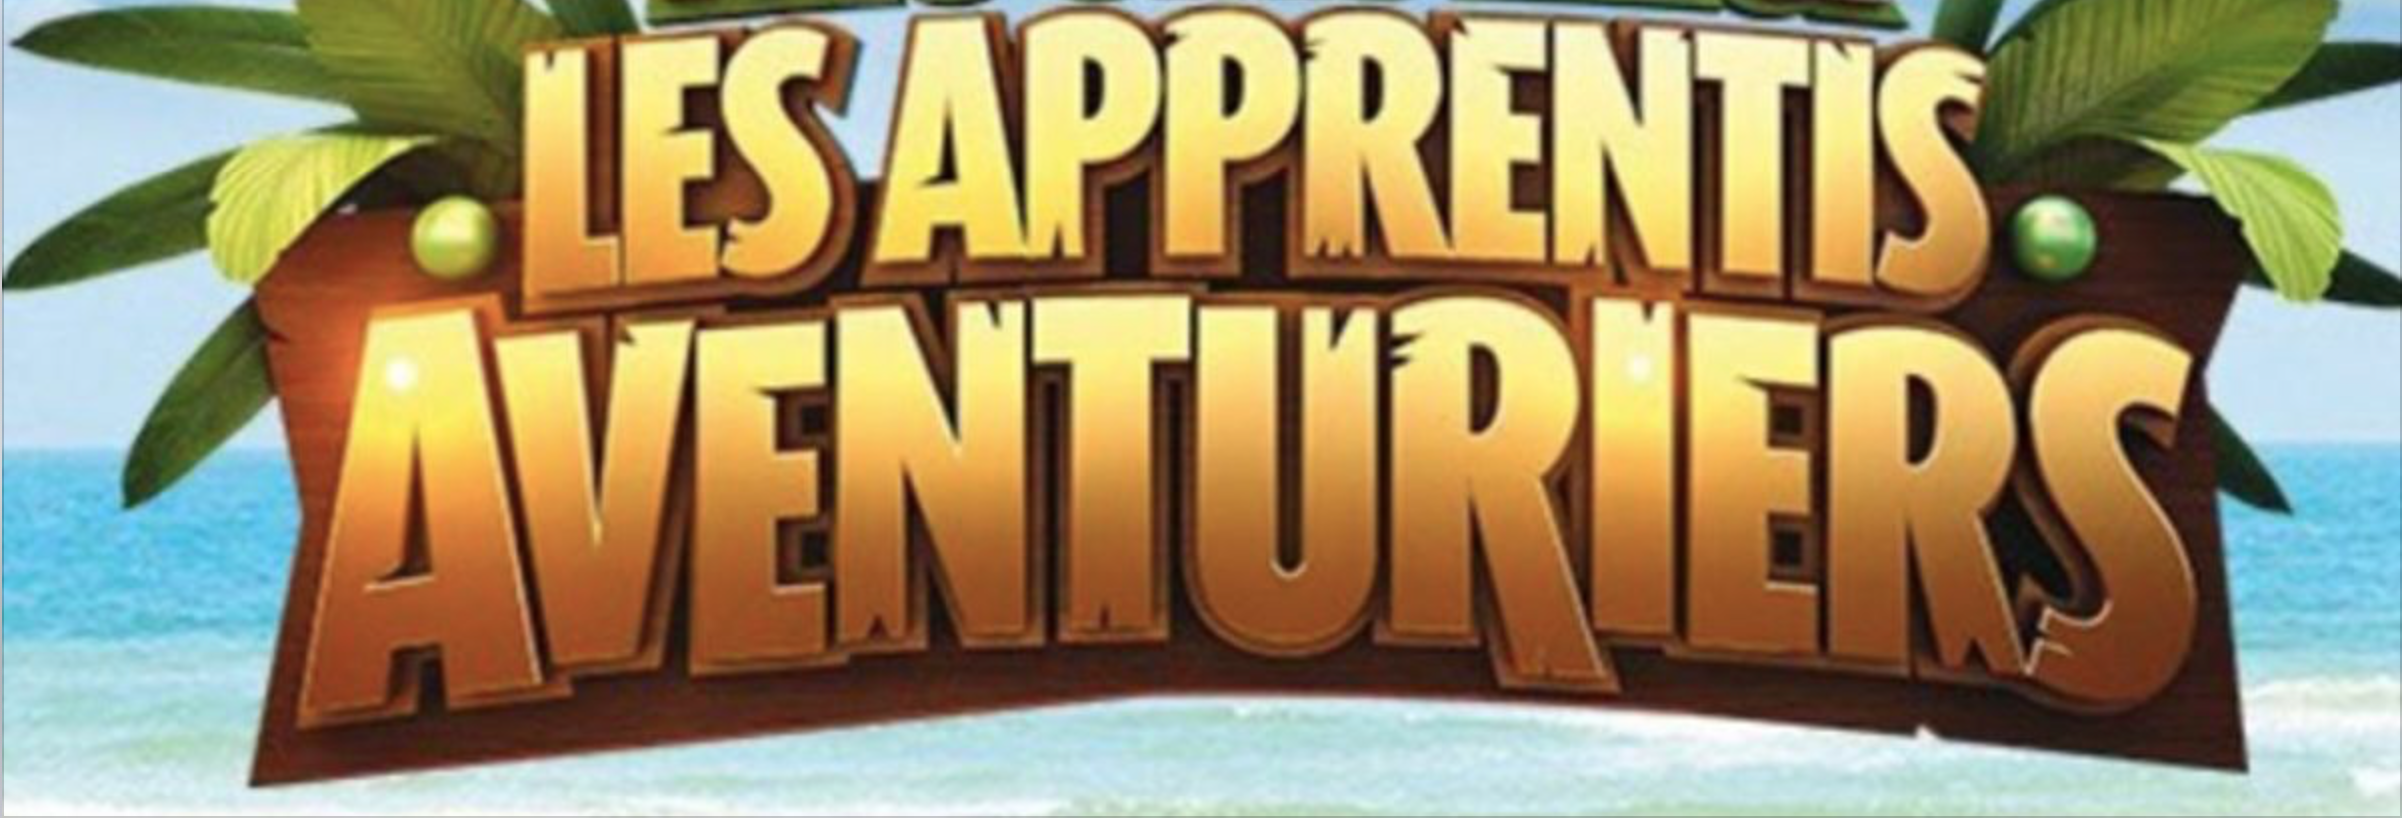 Les Apprentis Aventuriers : découvrez le casting de la septième saison !